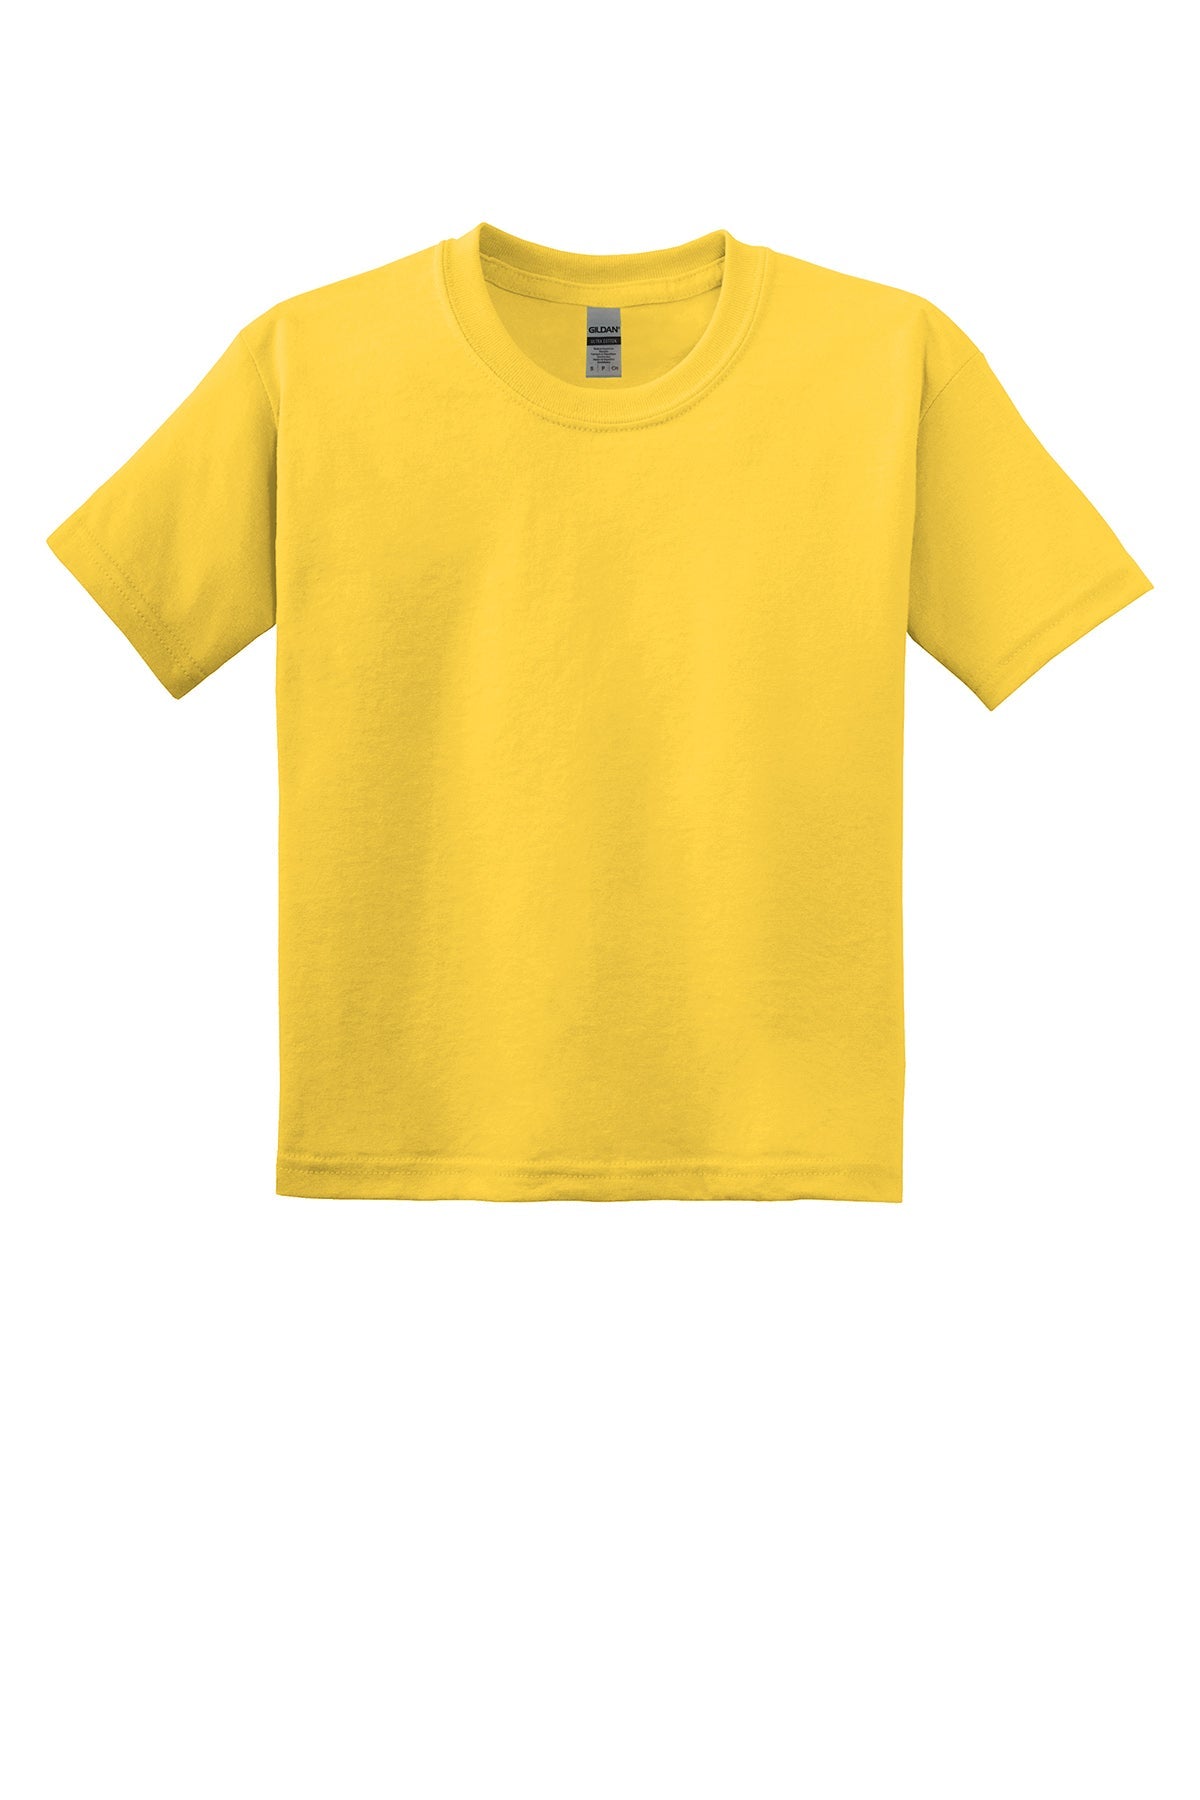 Gildan 8000B Youth Dryblend T-Shirt Yth Small / Daisy